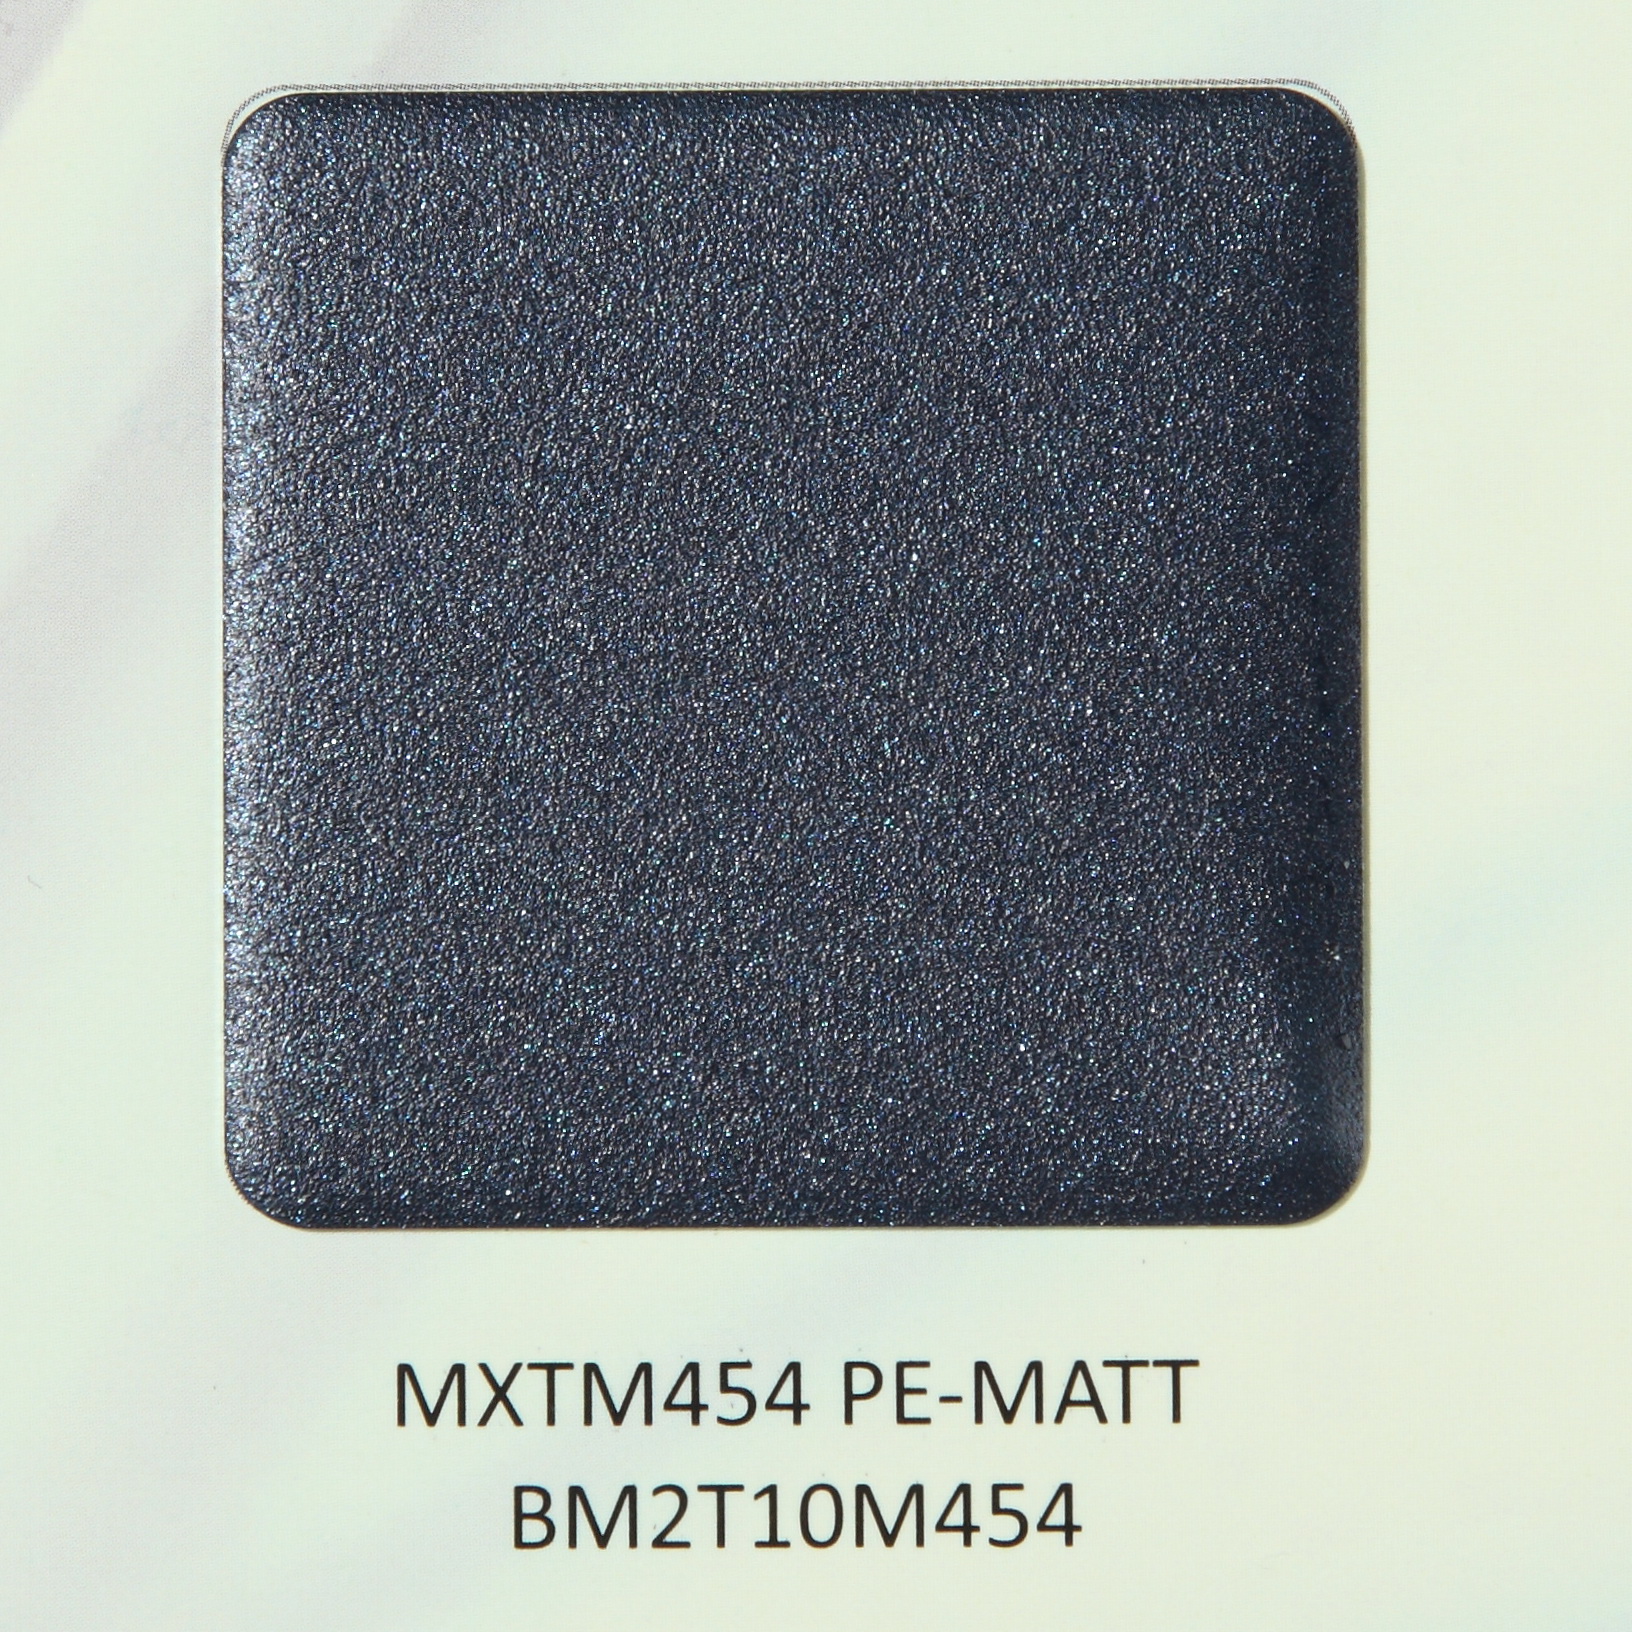 MXTM454 PE MATT BM2T10M454